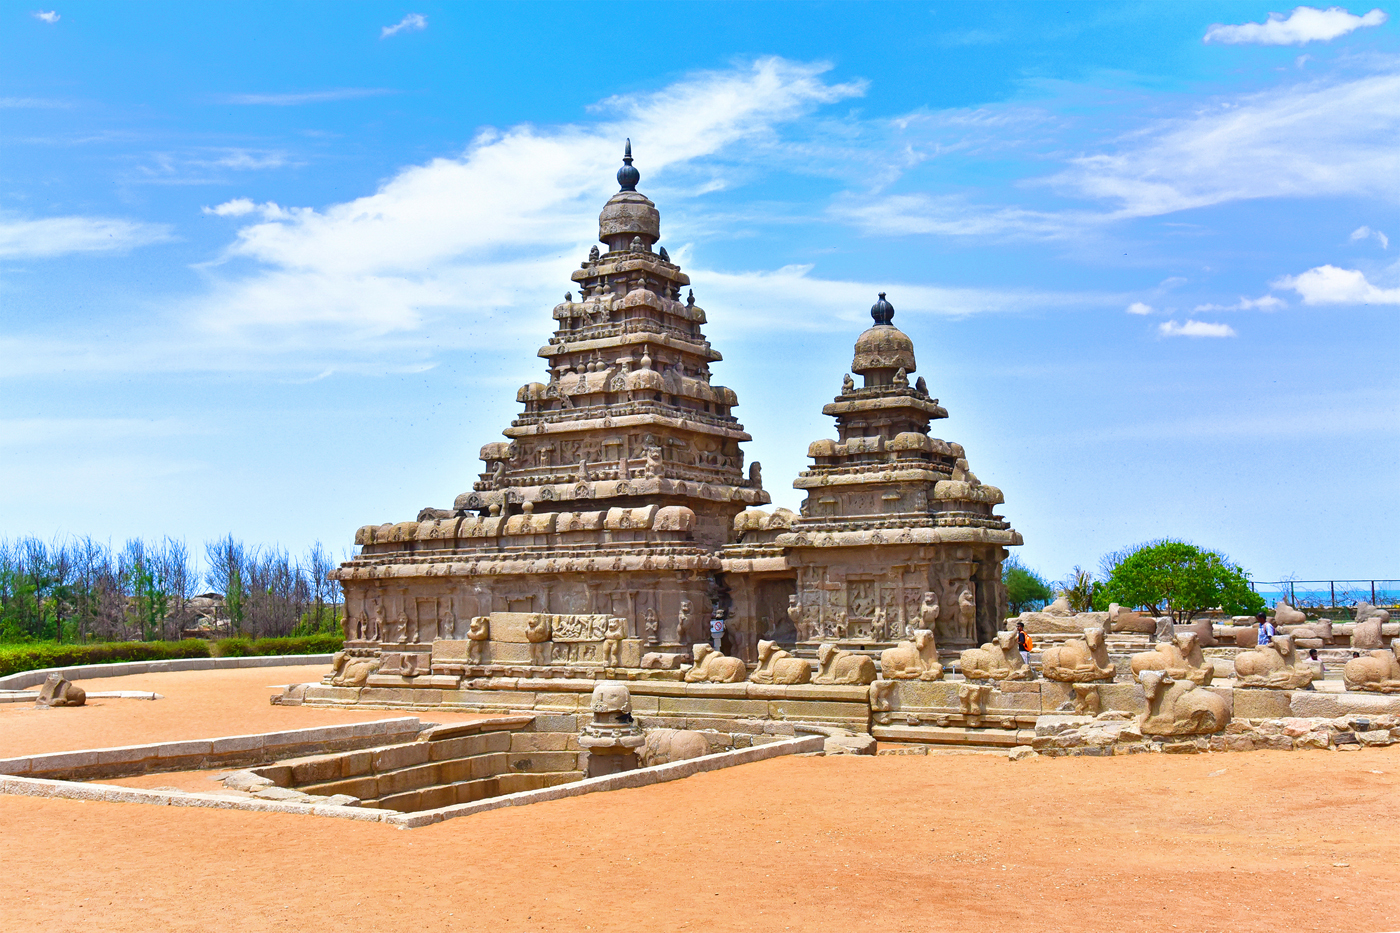 Day 3 - Mahabalipuram